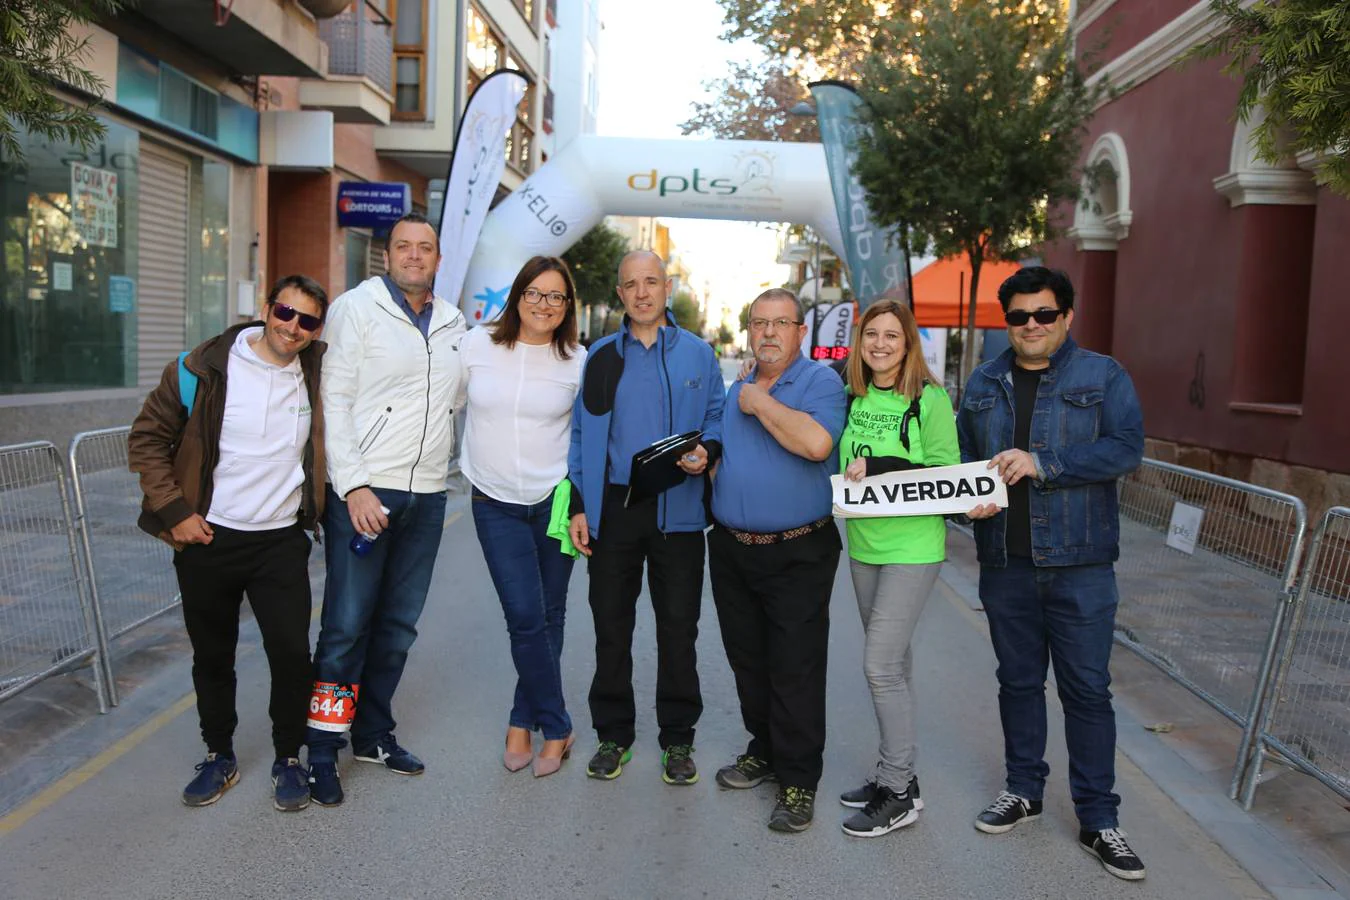 Lorca despidió el año corriendo la VI San Silvestre Ciudad de Lorca, que se corrió en la última tarde del año 2018